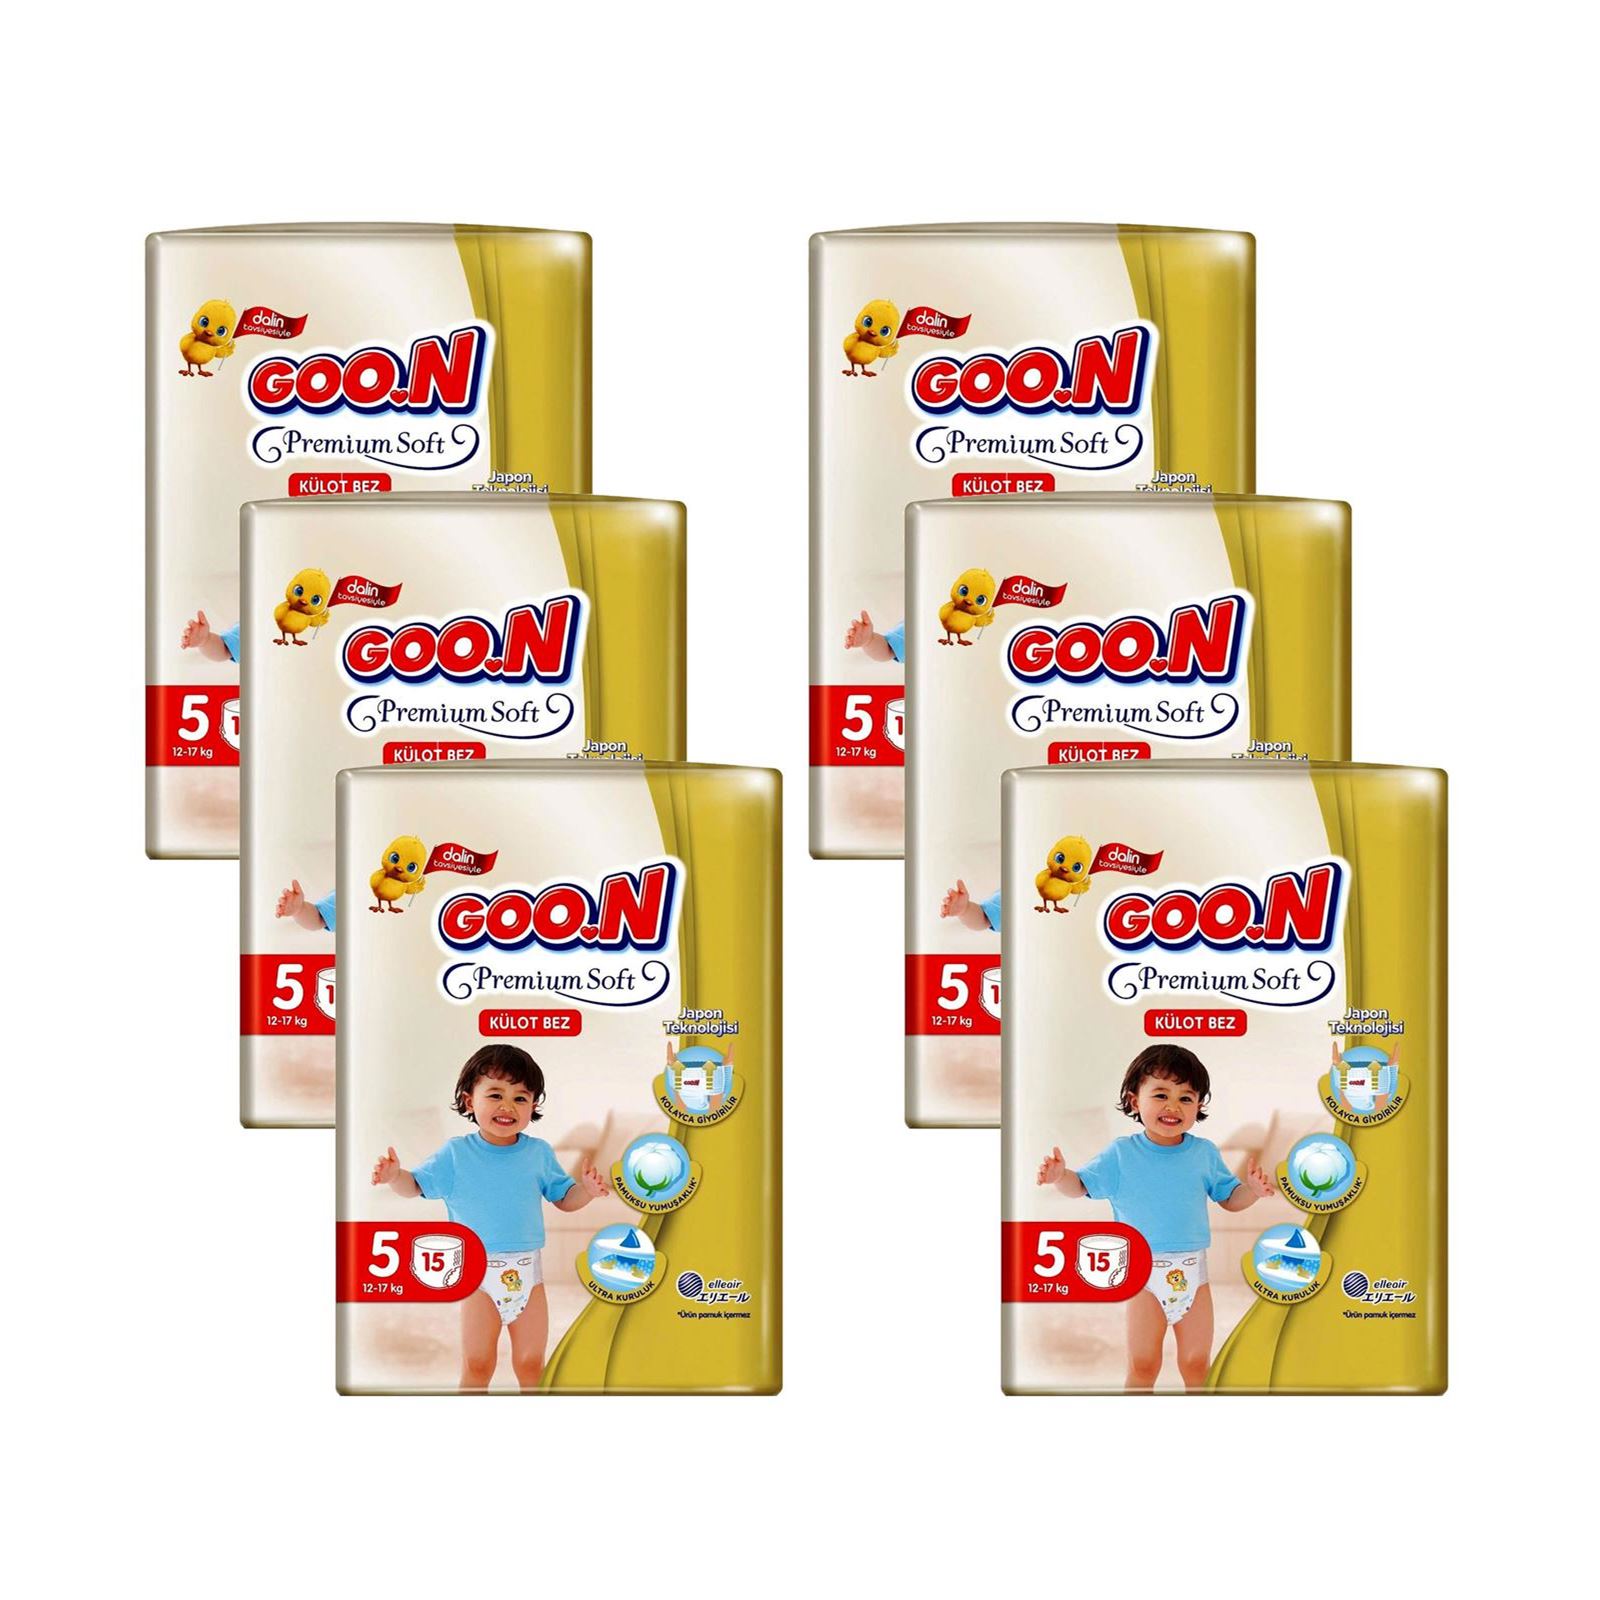 Goon Premium Külot İkiz Bebek Bezi 5 Beden 90 Adet Aylık Fırsat Paketi